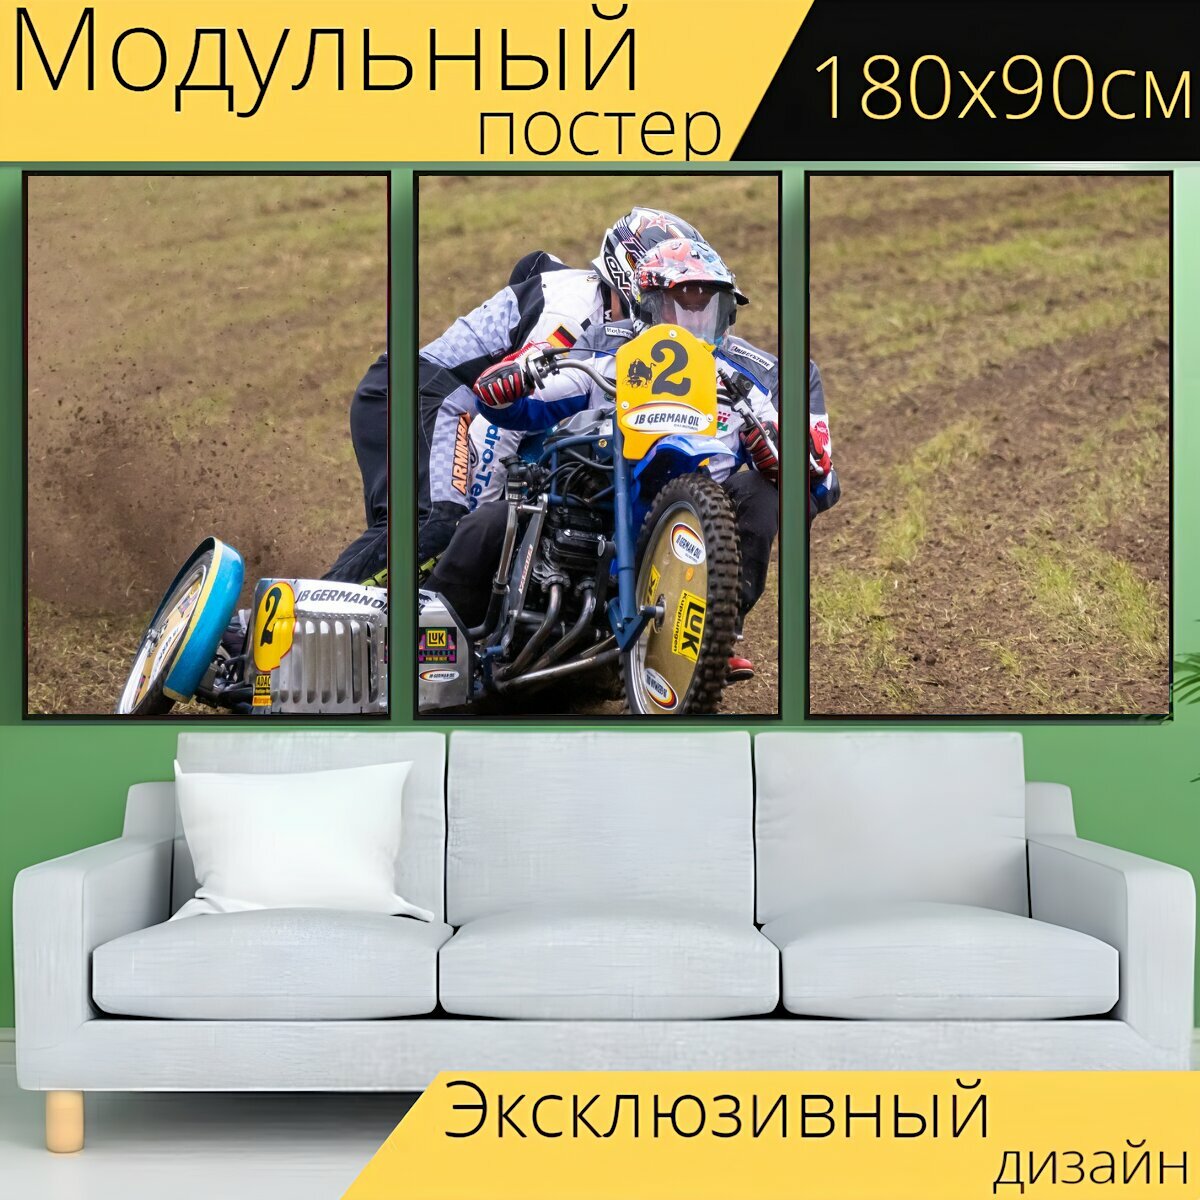 Модульный постер "Моторспорт а о, мотоцикл, виды спорта" 180 x 90 см. для интерьера